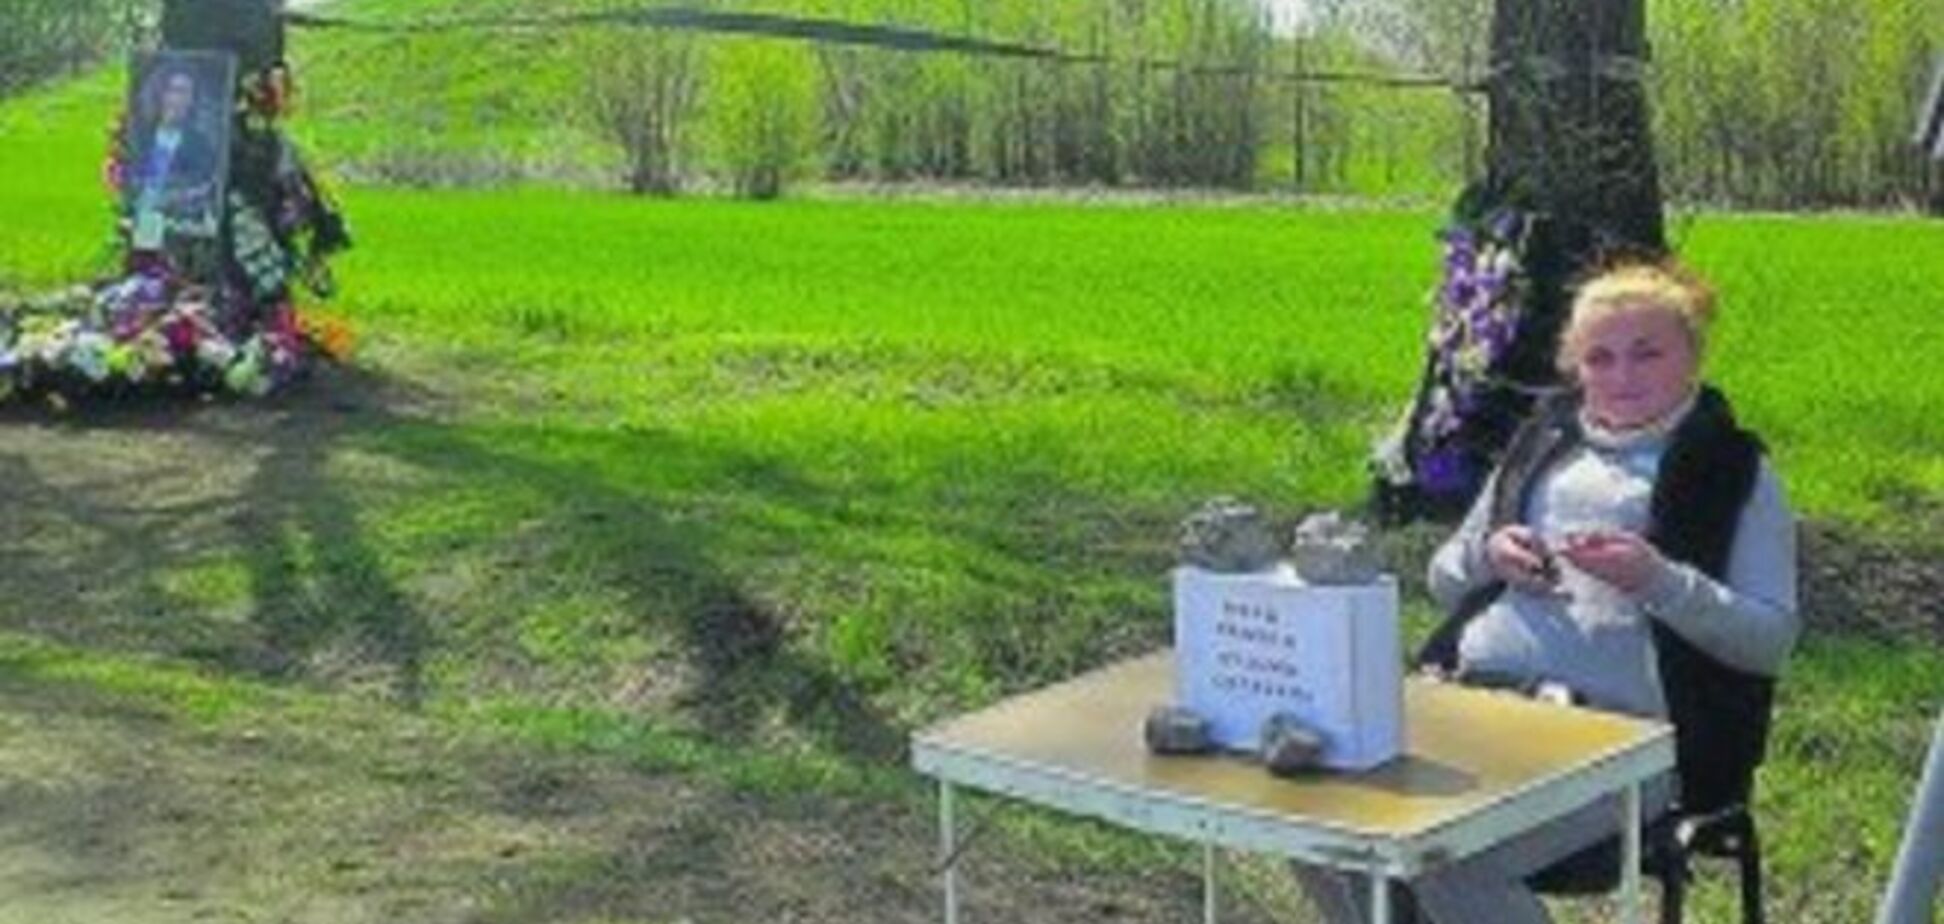 Инициатива поставить памятник Кузьме Скрябину вызвала скандал